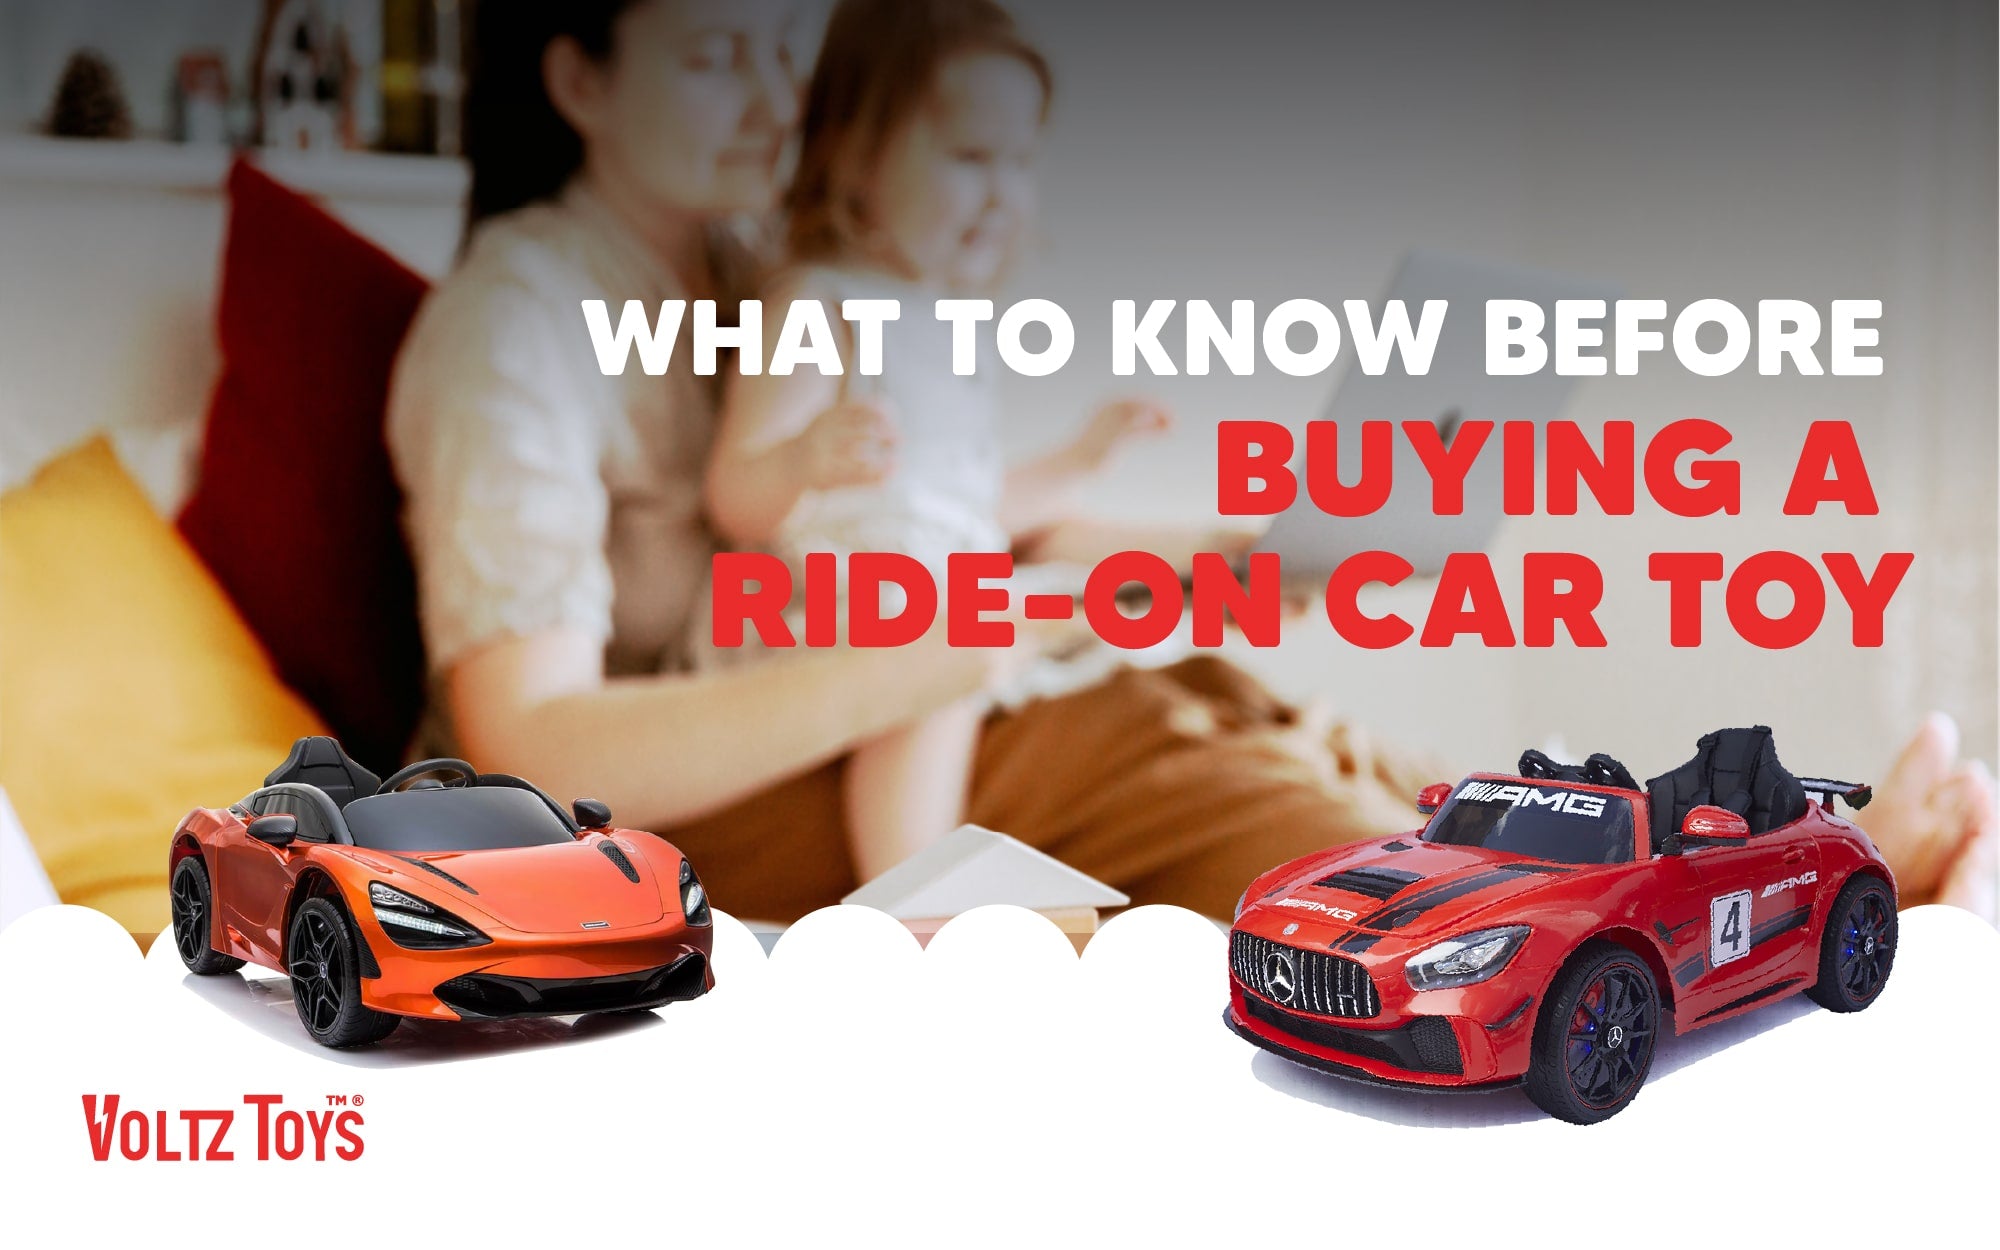 Ce qu'il faut savoir avant d'acheter un jouet de voiture à chevaucher